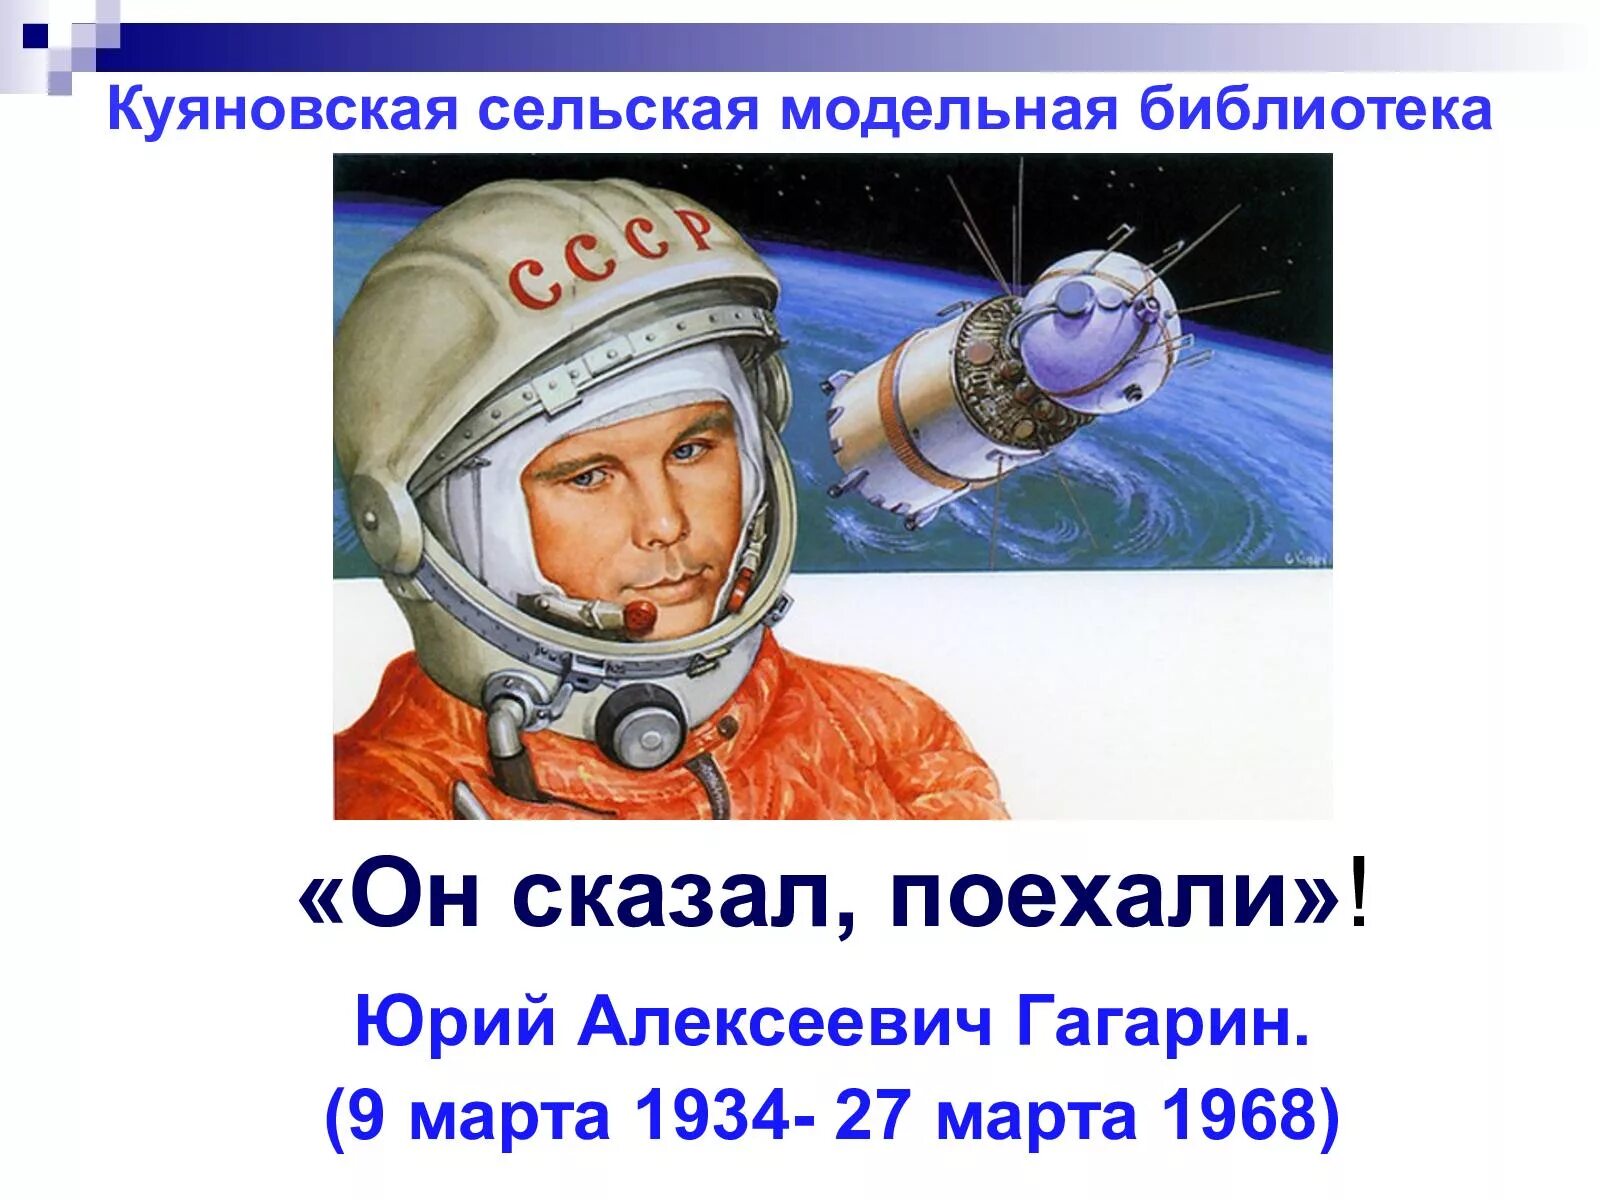 Гагарин сказал поехали. Он сказал поехали. День космонавтики.